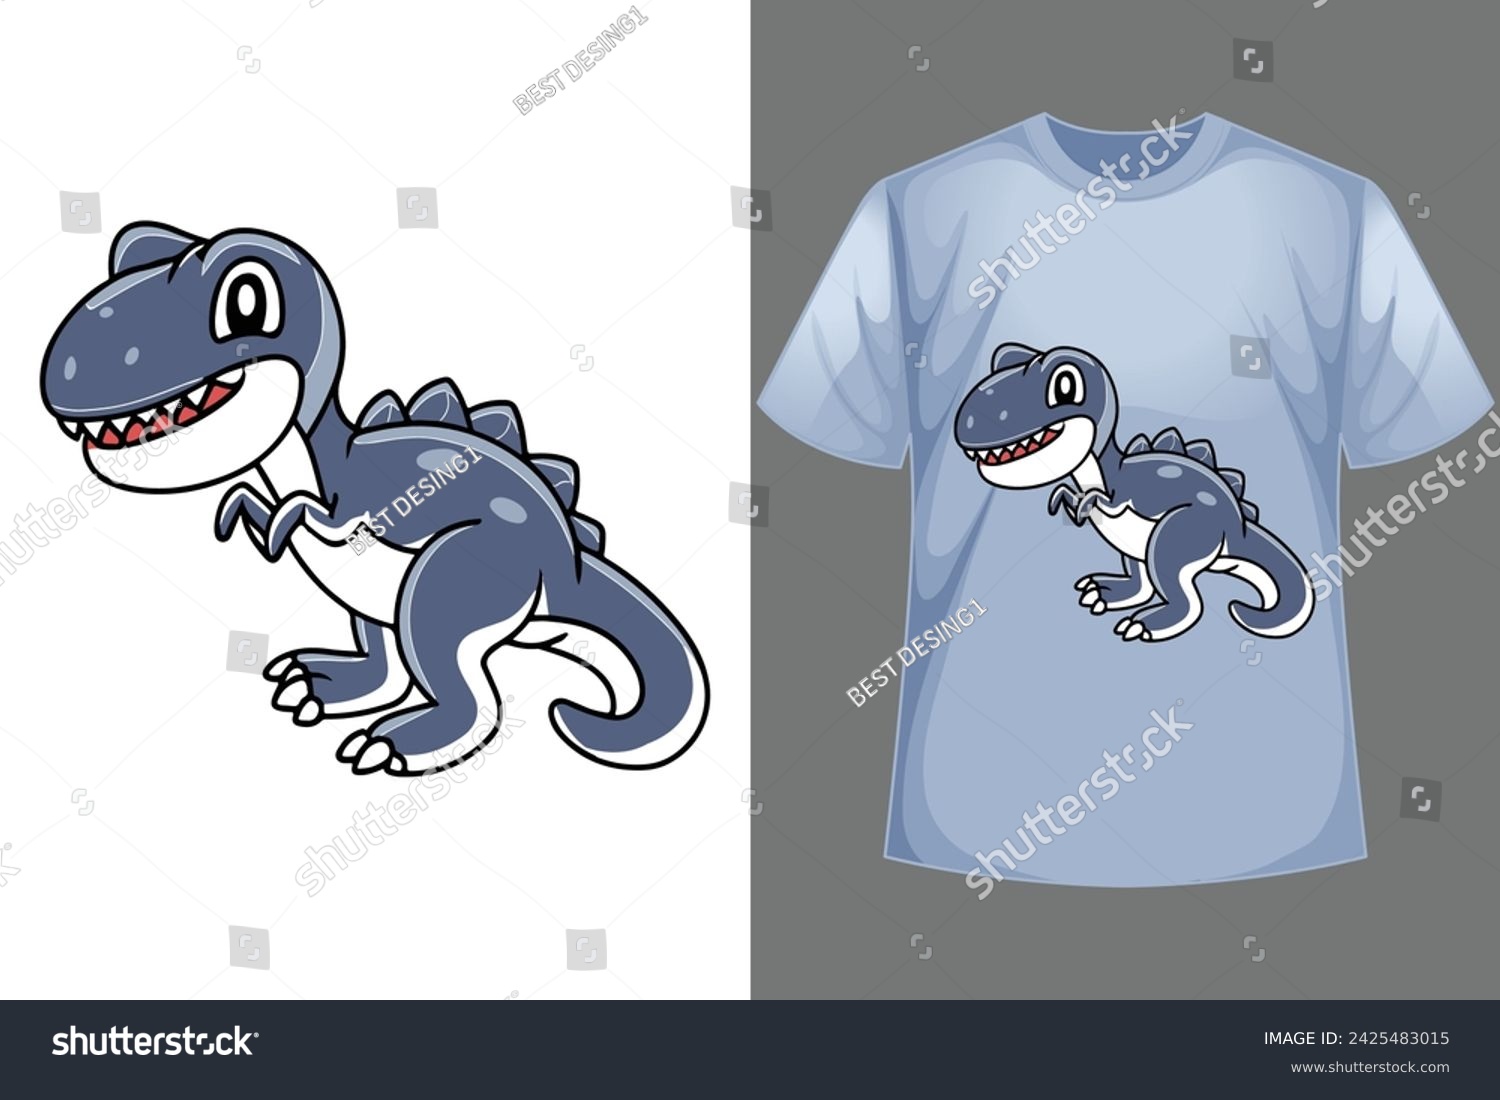 SVG of vector little cute spinosaurus dinosaur cartoon character svg